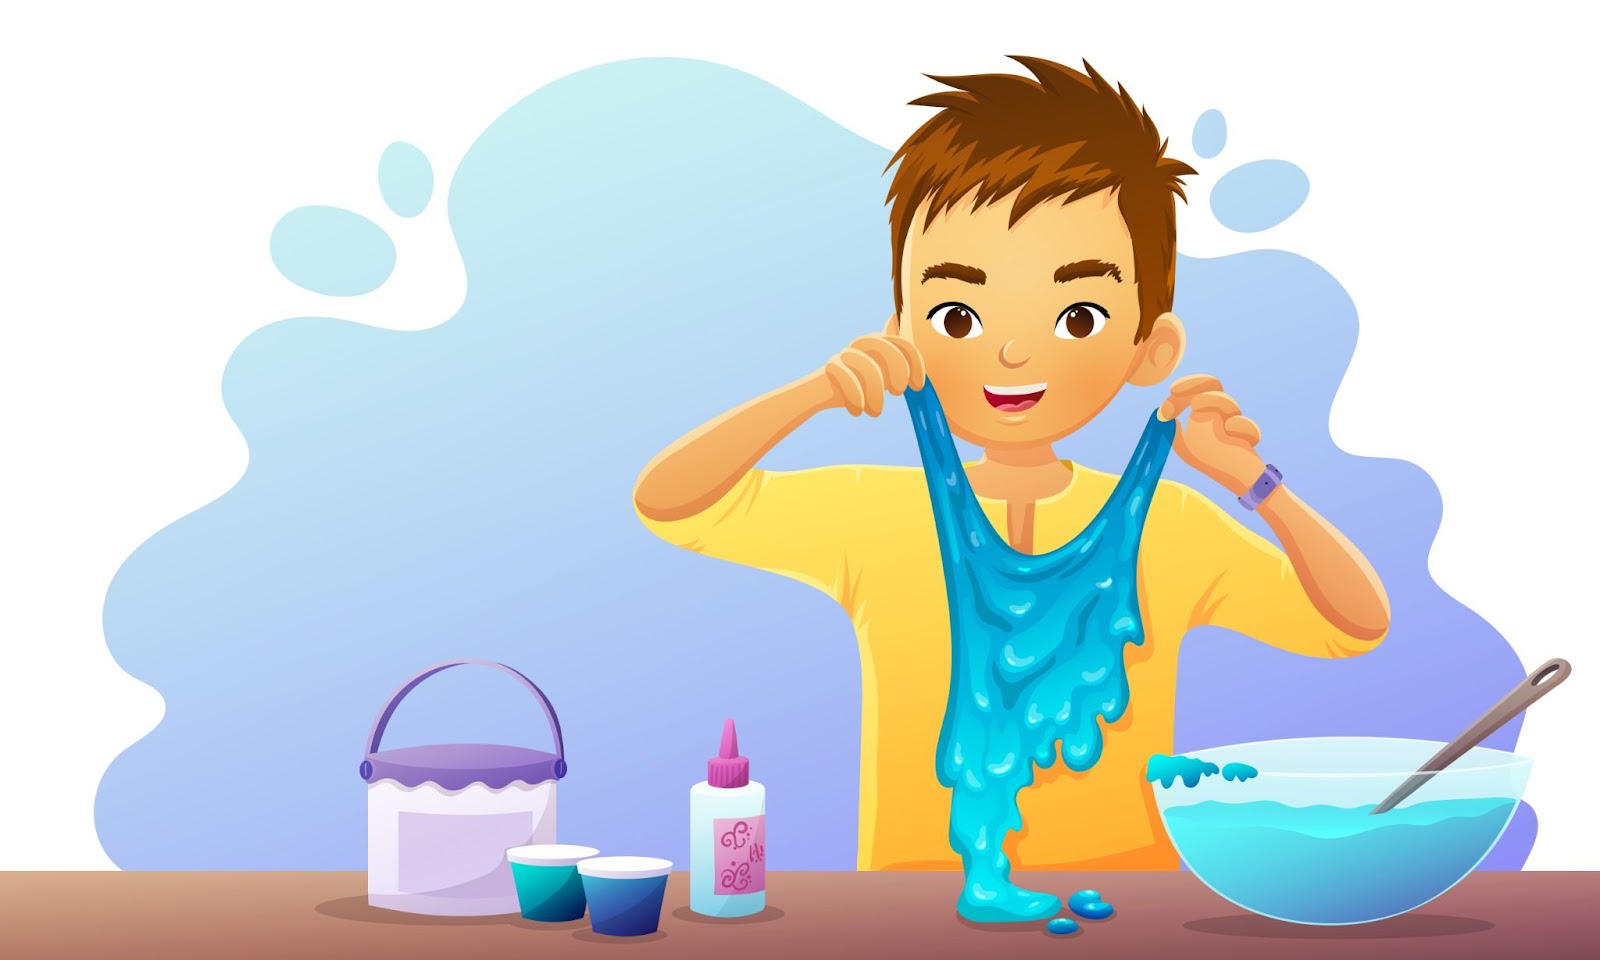 Giovane ragazzo che gioca con la melma blu-verde fatta in casa. Illustrazione vettoriale isolata su sfondo bianco.